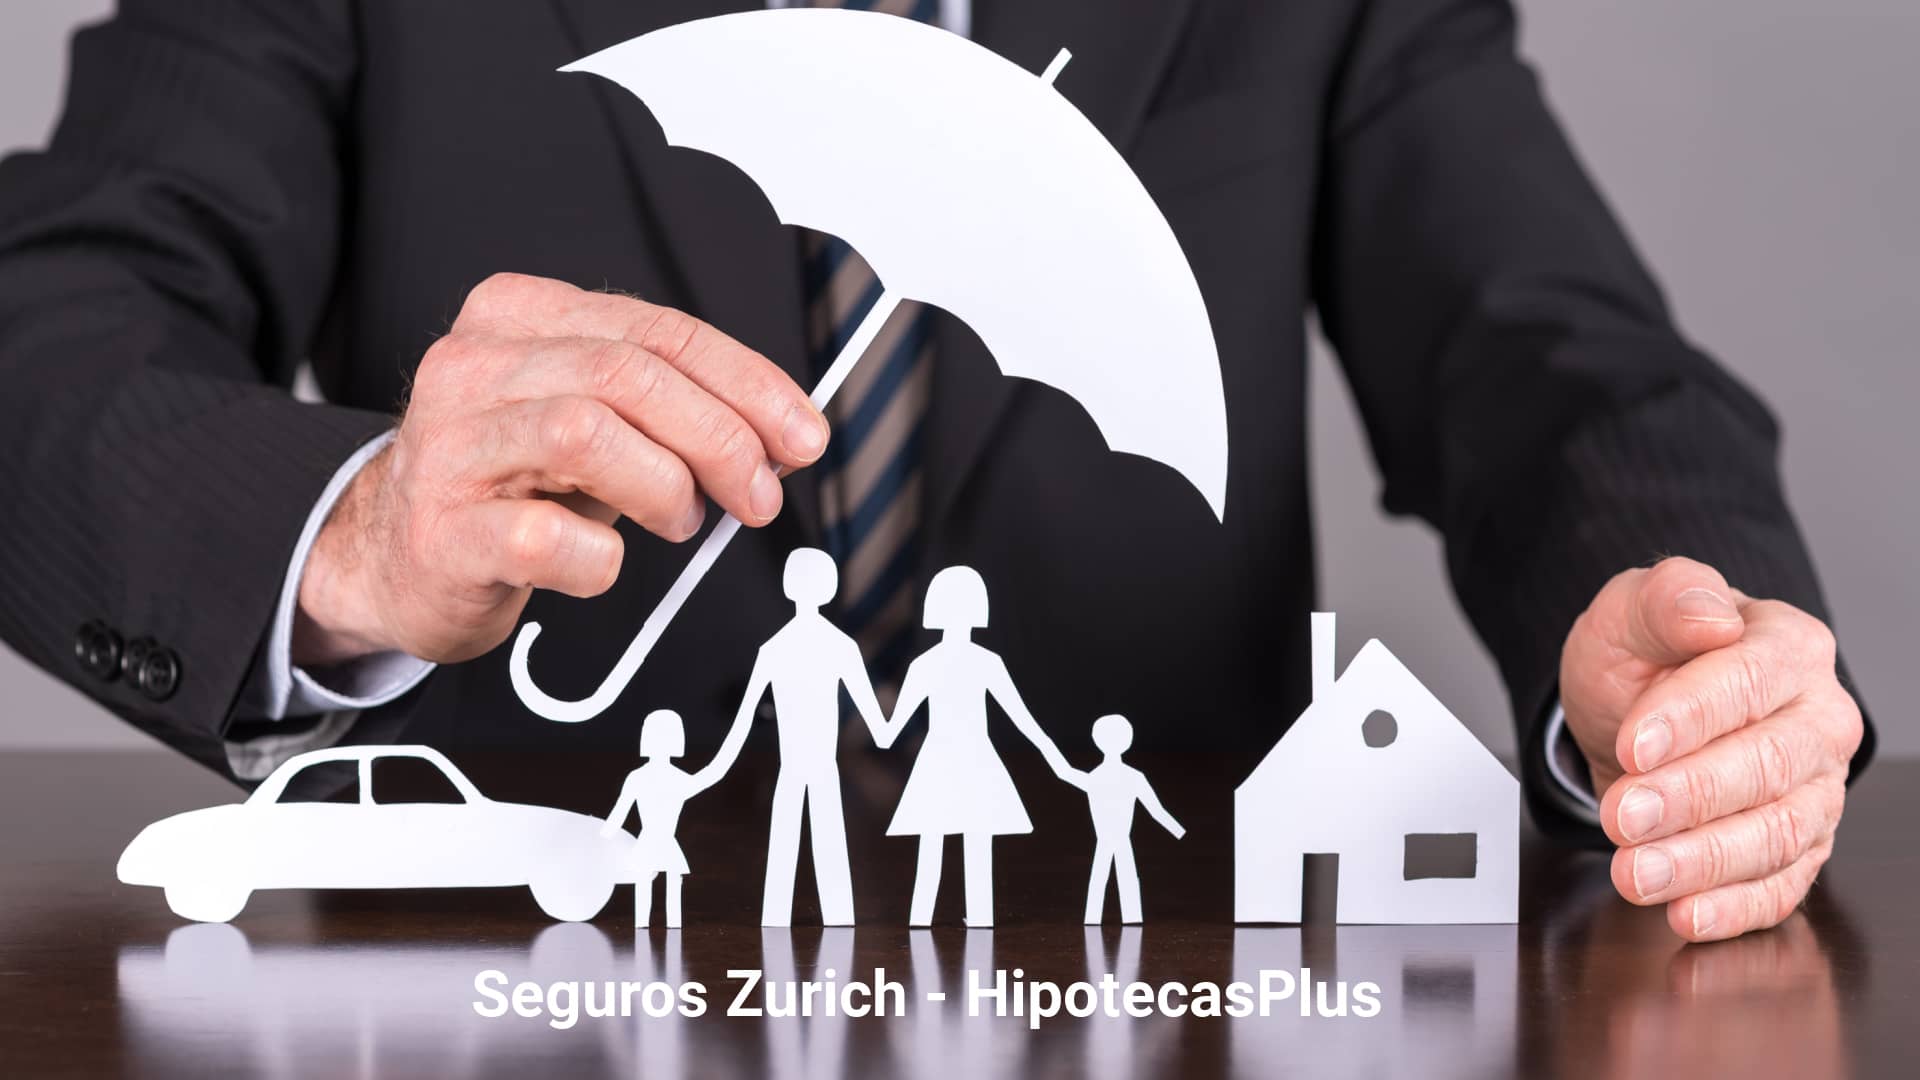 https://www.hipotecasplus.es/wp-content/uploads/HipotecasPlus-Seguros-Zurich-.jpg